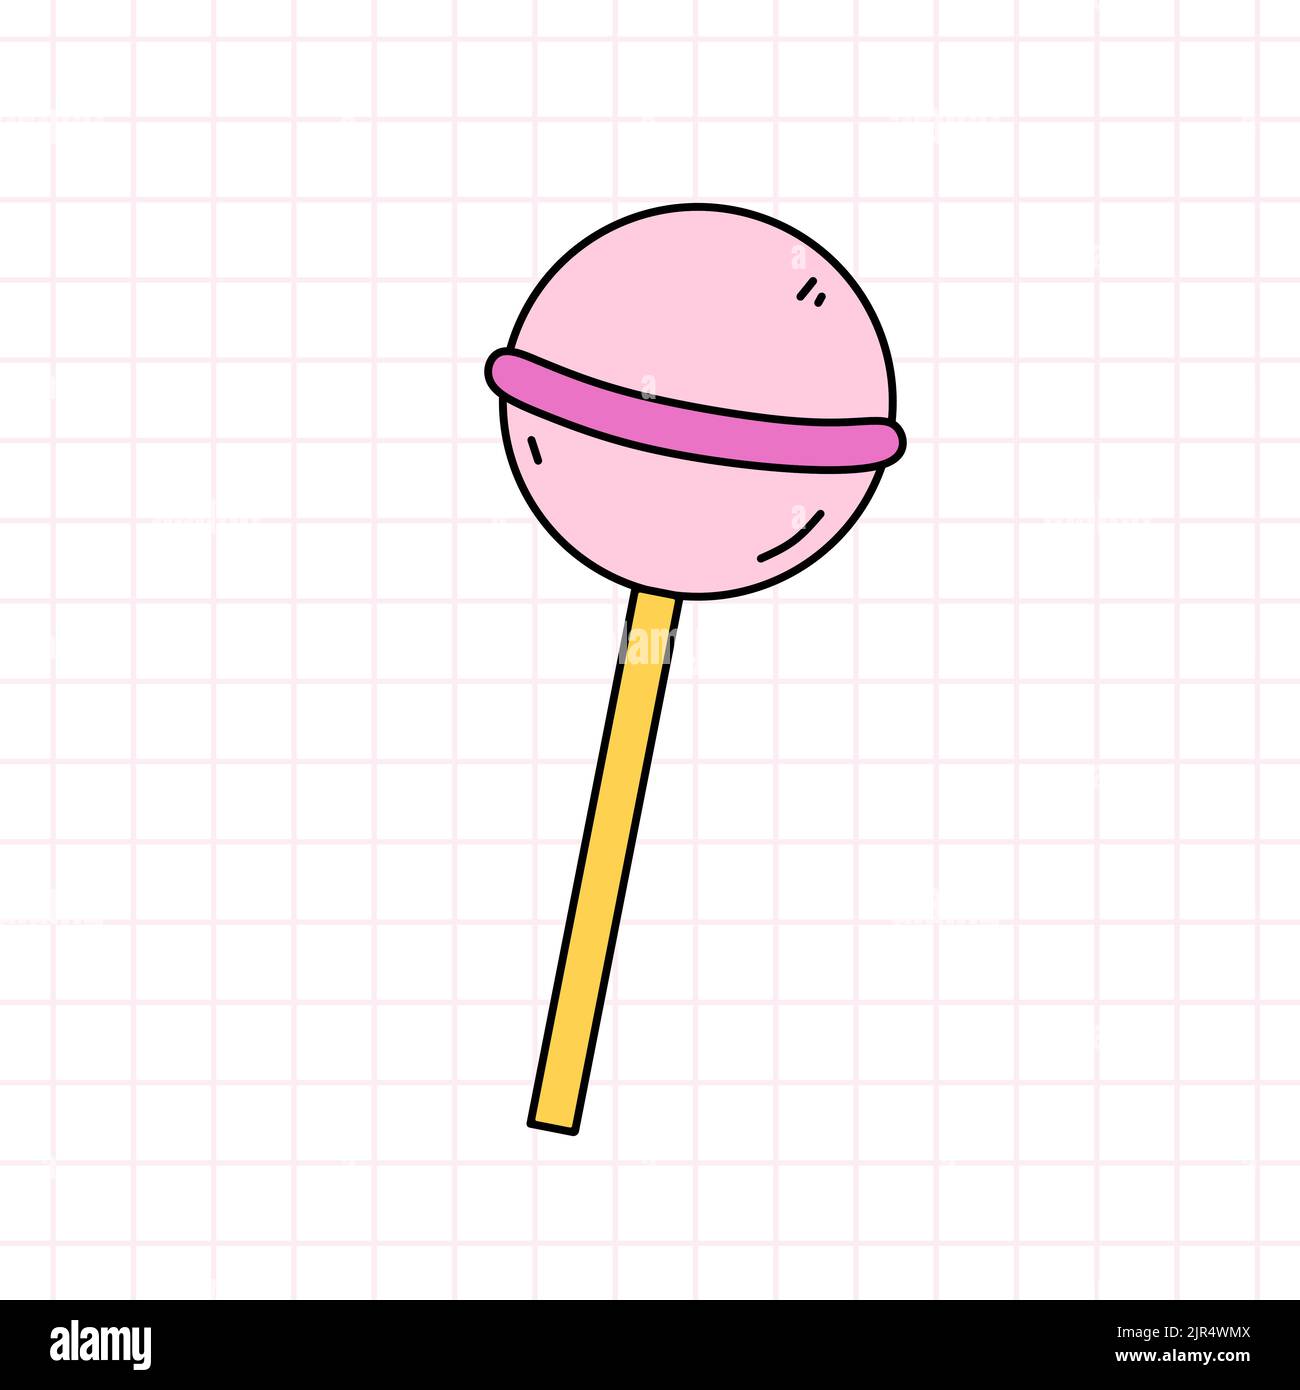 Rose Lollipop dans le style de la 90s. Sucreries. Illustration vectorielle à dessin manuel isolée sur fond blanc. Nostalgie pour le 1990s Illustration de Vecteur